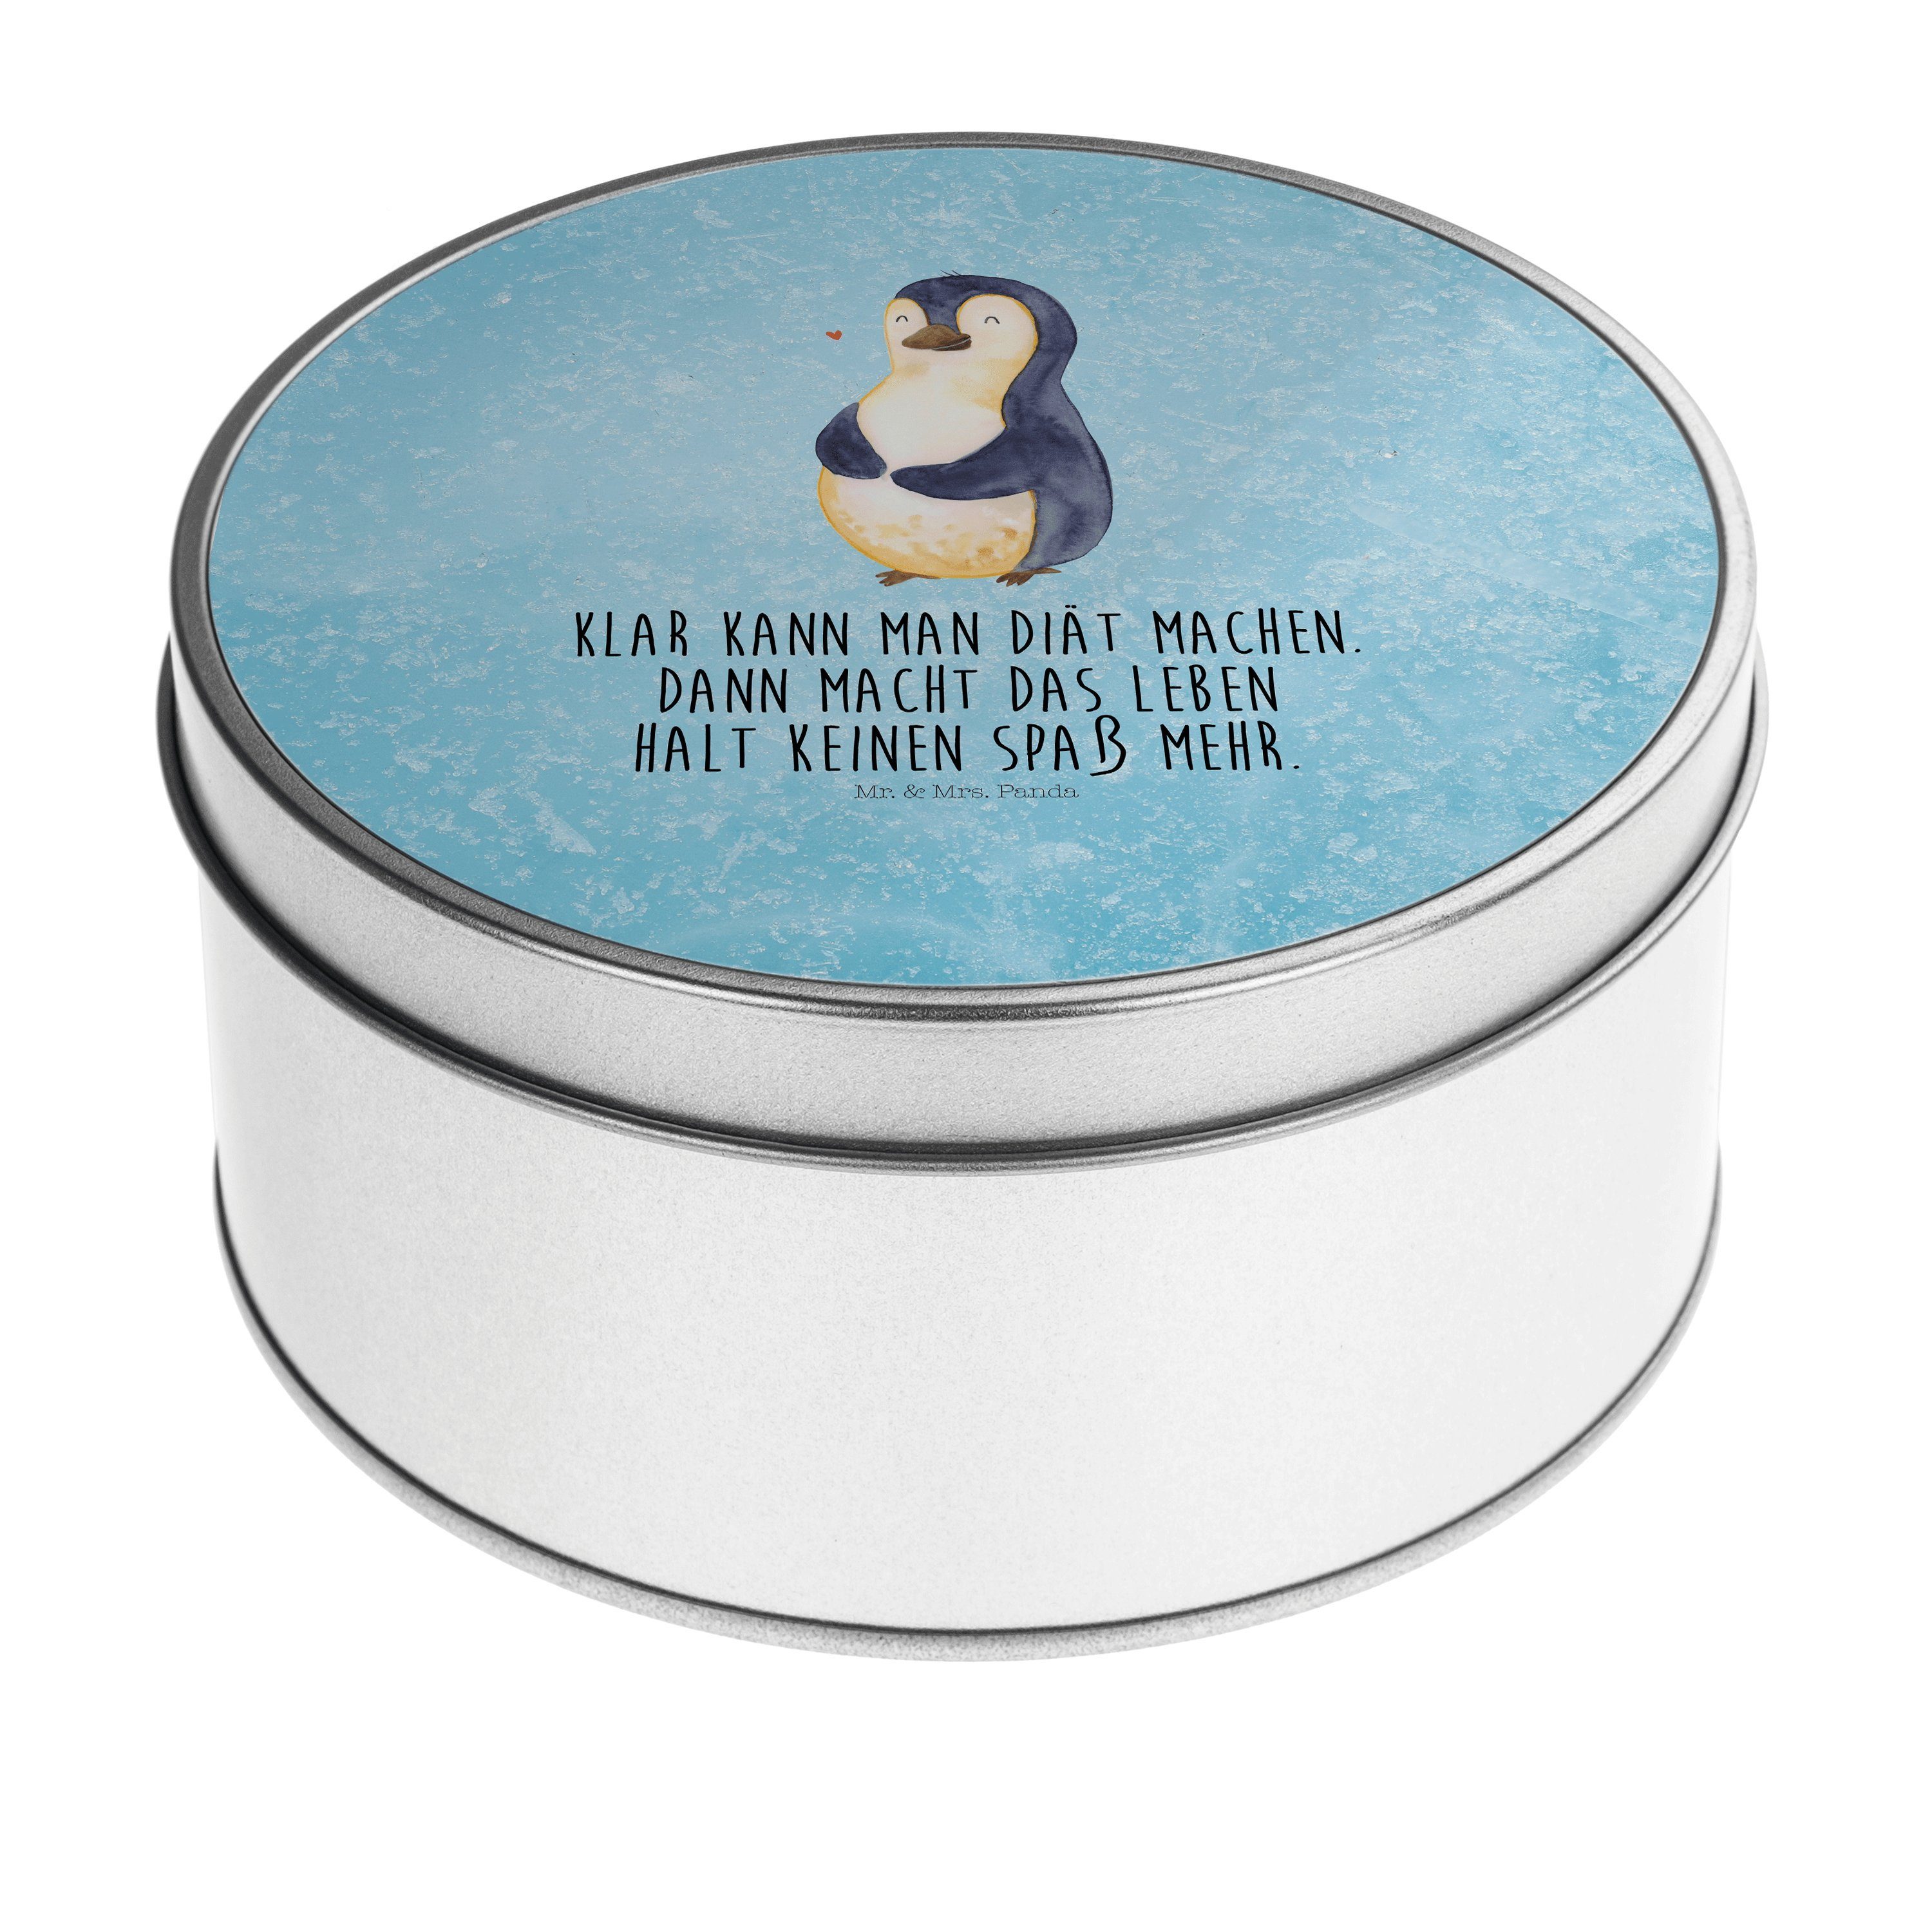 Mr. & Mrs. Panda Aufbewahrungsdose Pinguin Diät - Eisblau - Geschenk, Bauch, dick, Keksdose, Geschenkbox (1 St), Hochwertige Qualität